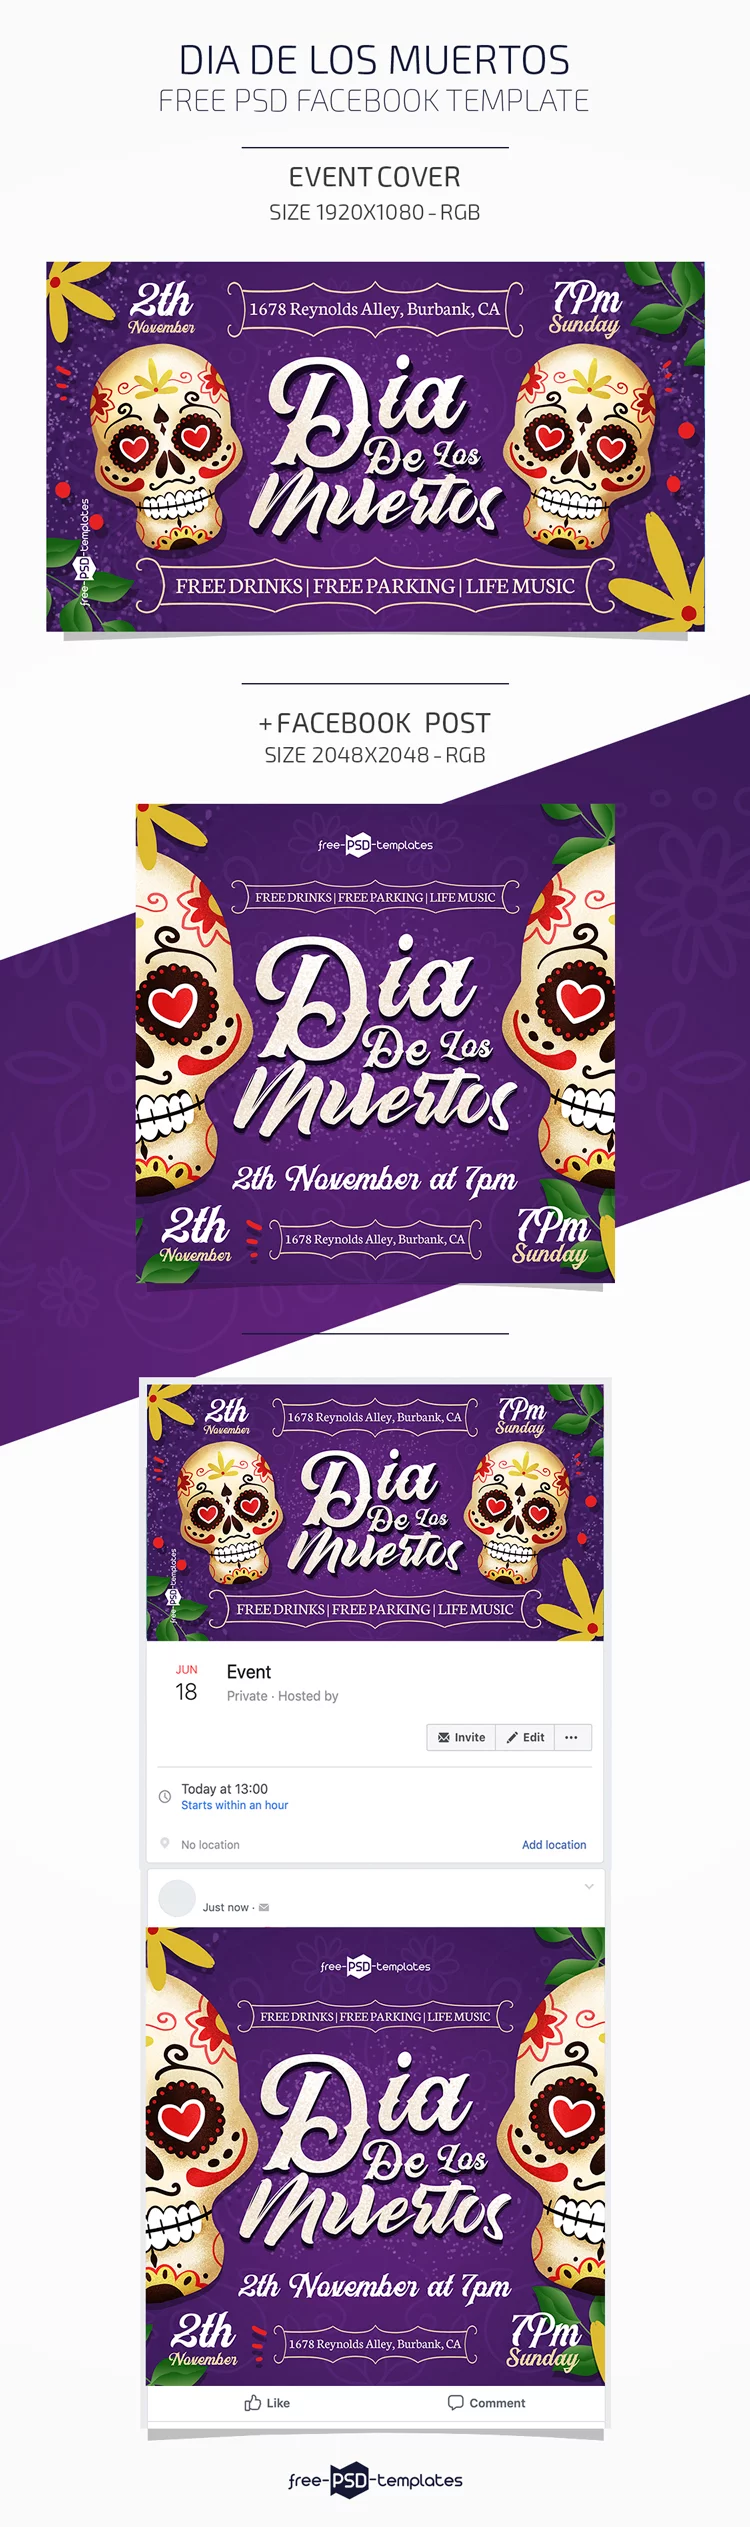 Free Dia De Los Muertos Facebook Event Page Template